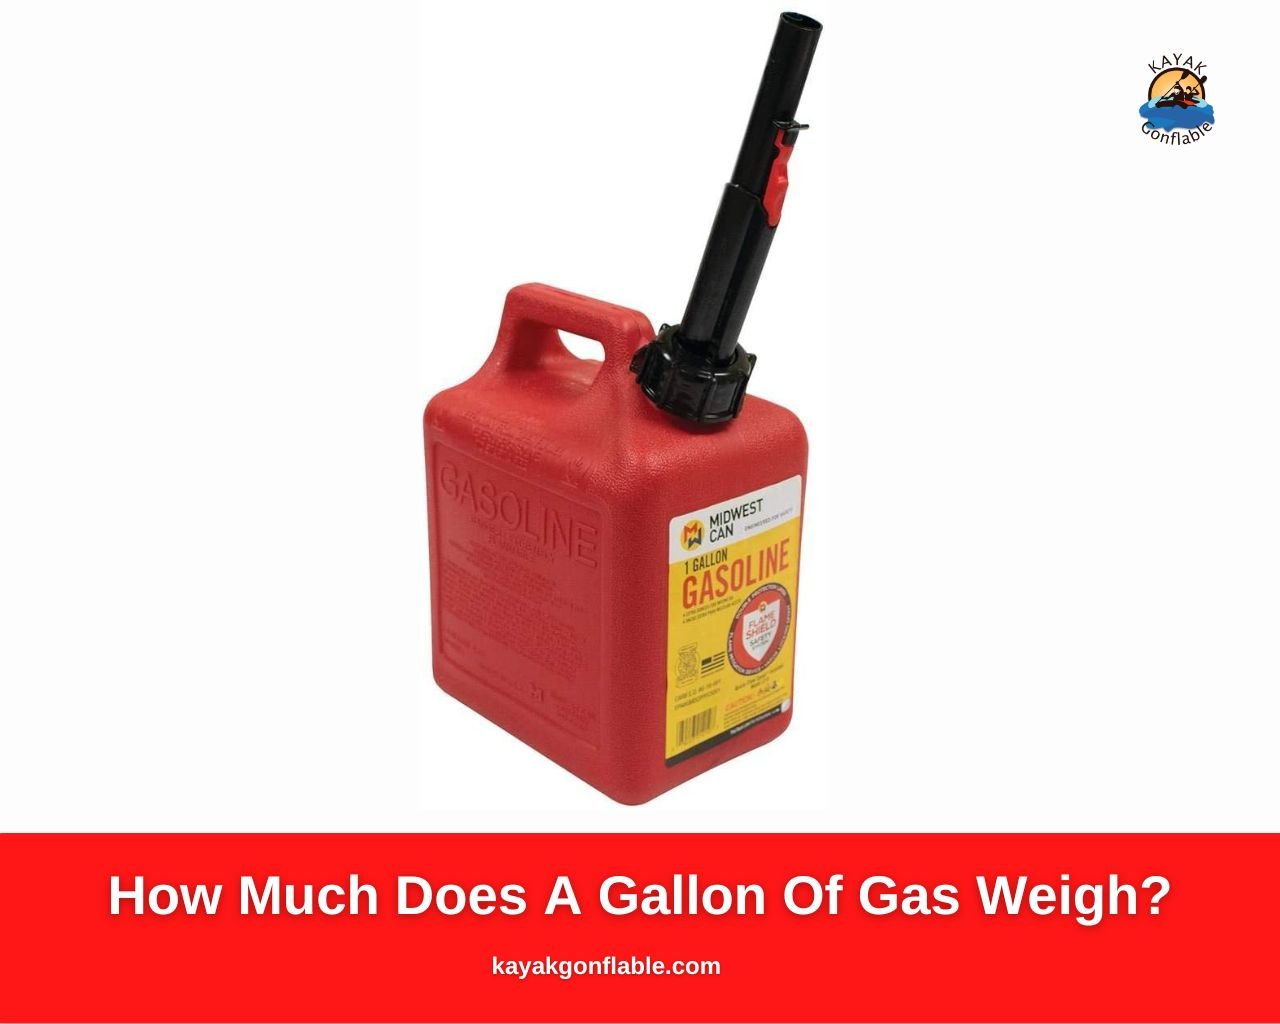 Wie viel wiegt eine Gallone Benzin